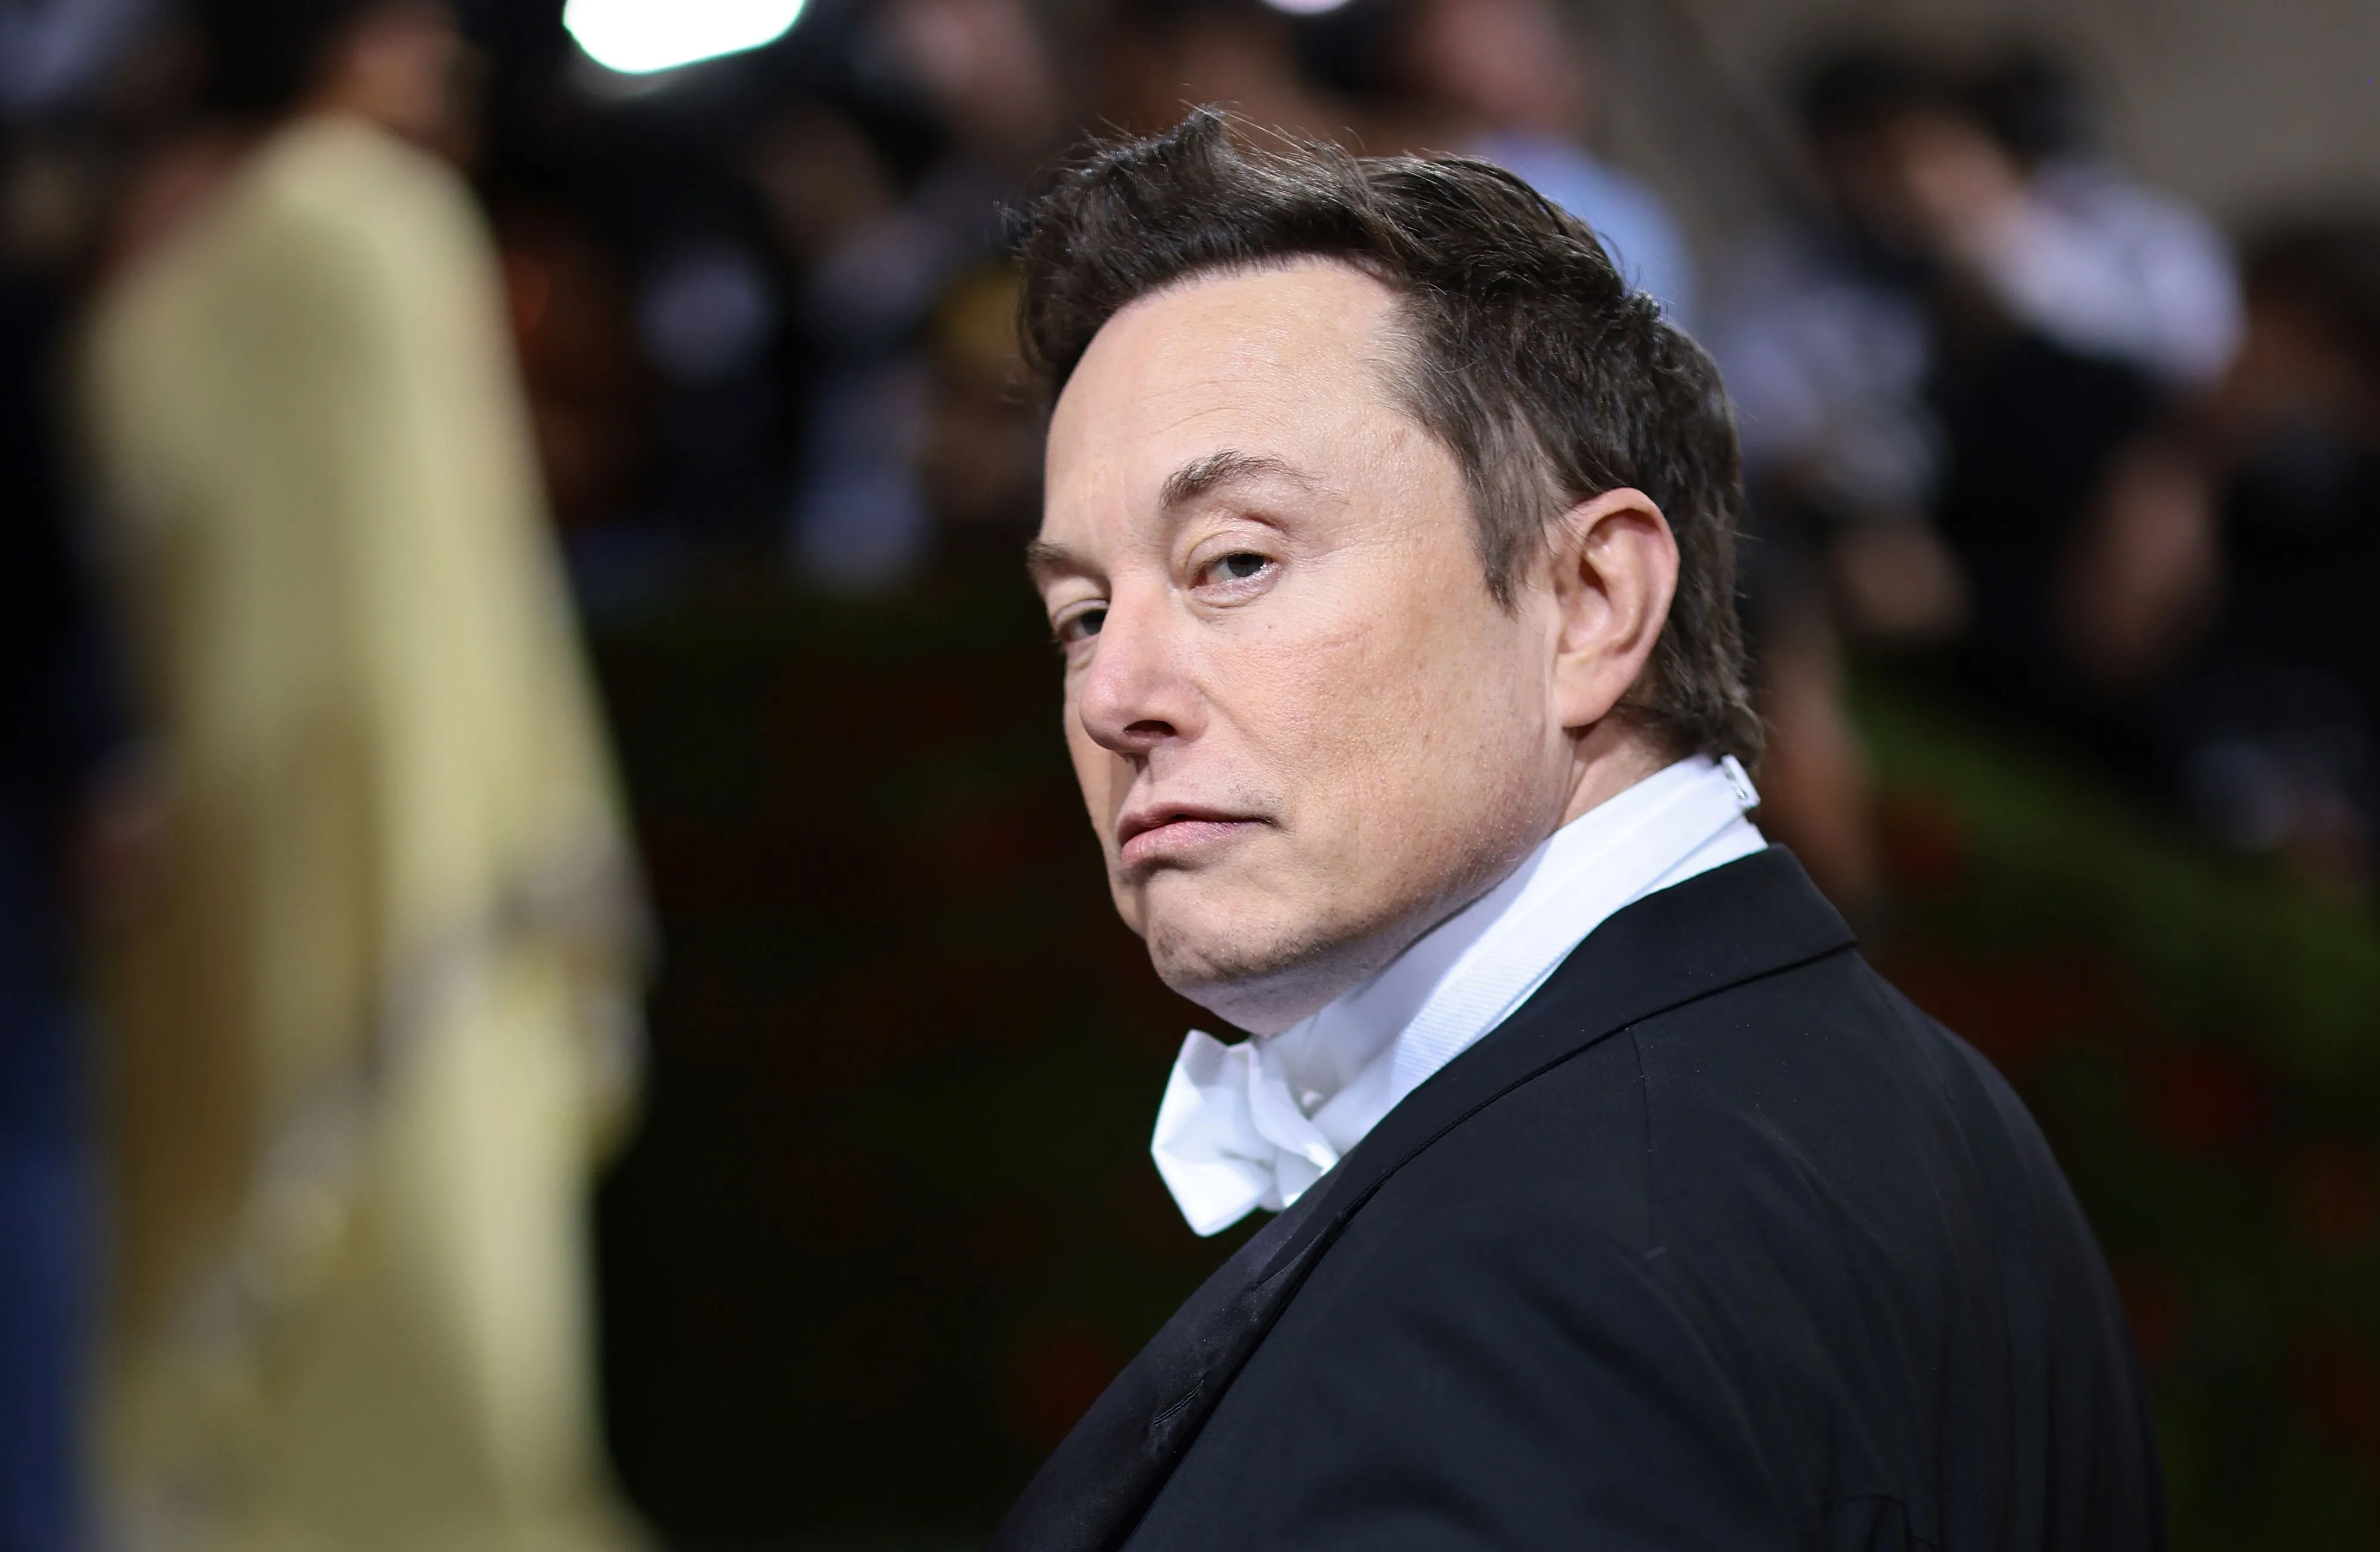 Ingenieros despedidos de SpaceX demandan a Musk por abusos laborales y conducta sexista